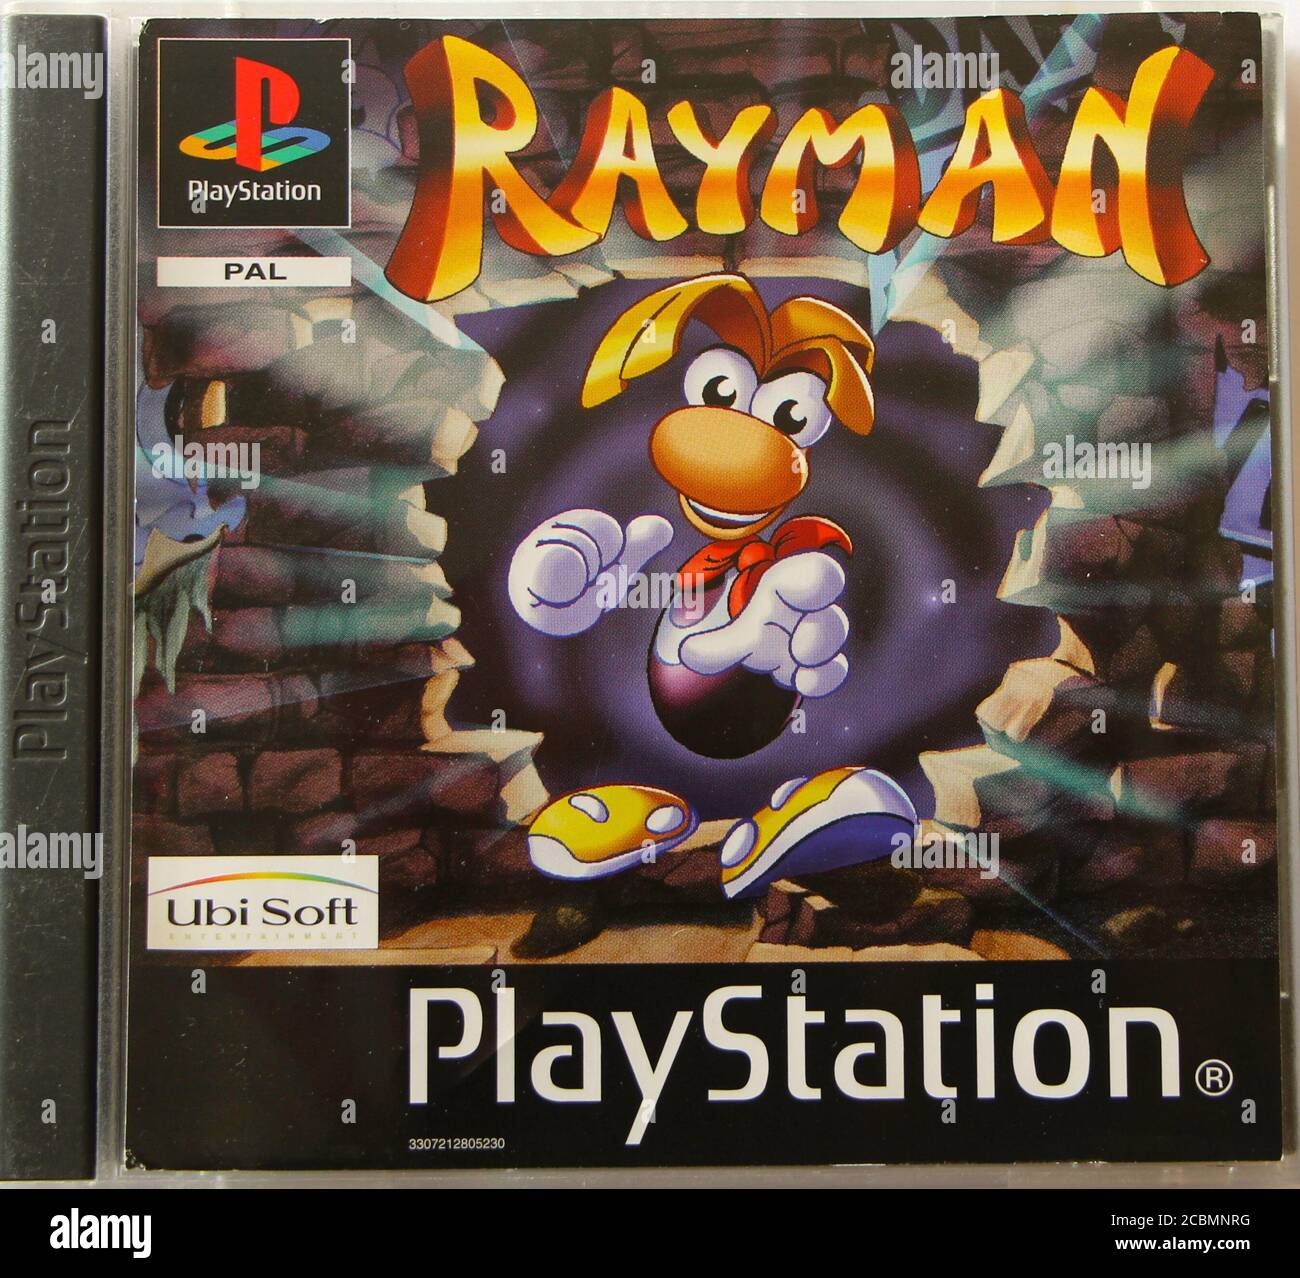 Foto de una caja de CD y portada original de PlayStation 1 para Rayman El juego original de Ubisoft Foto de stock